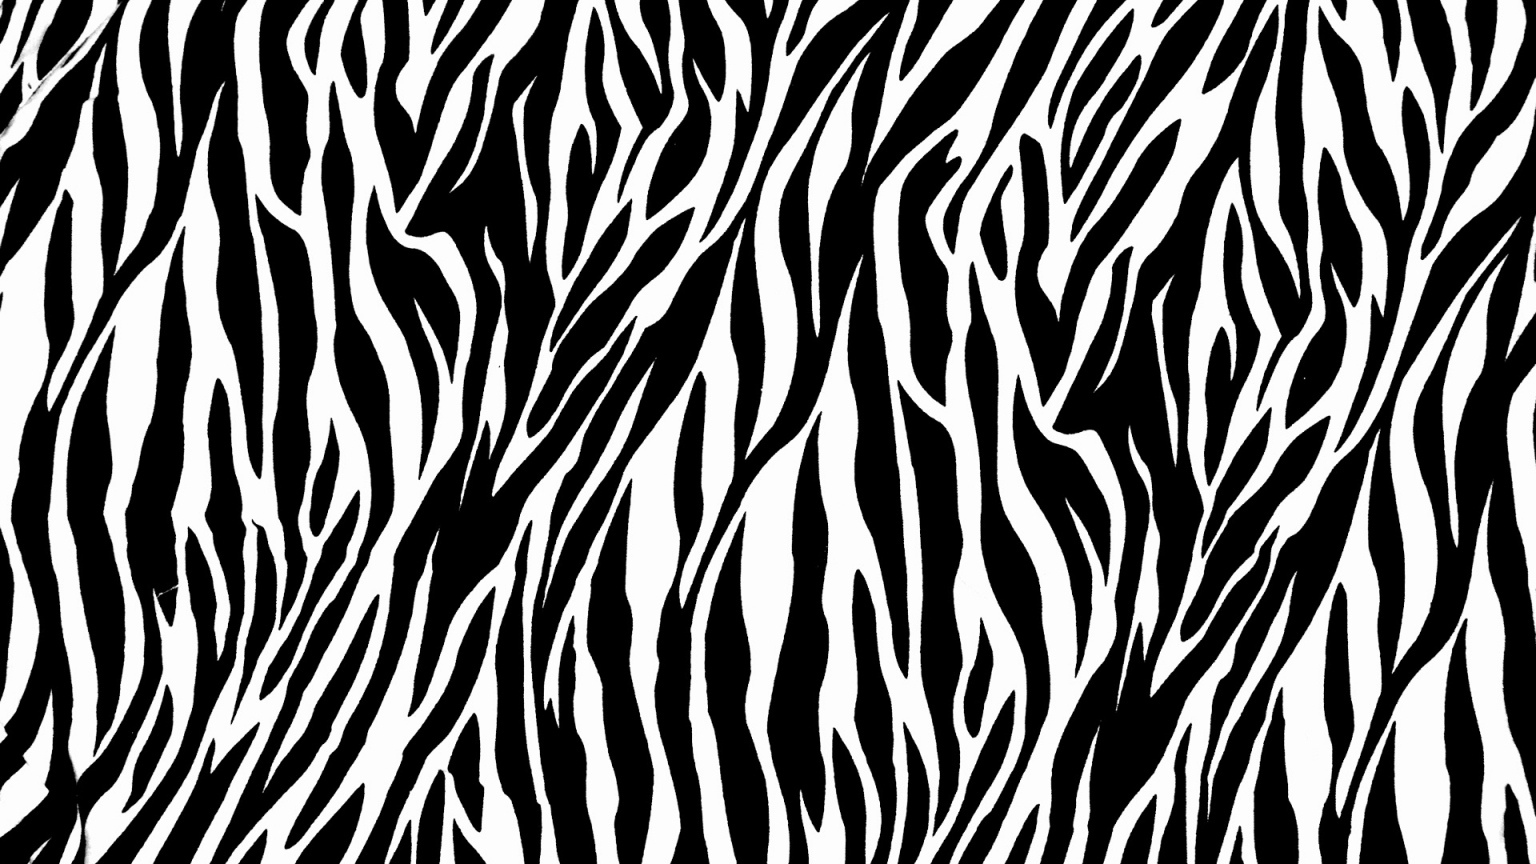 Zebra Print for 1536 x 864 HDTV resolution